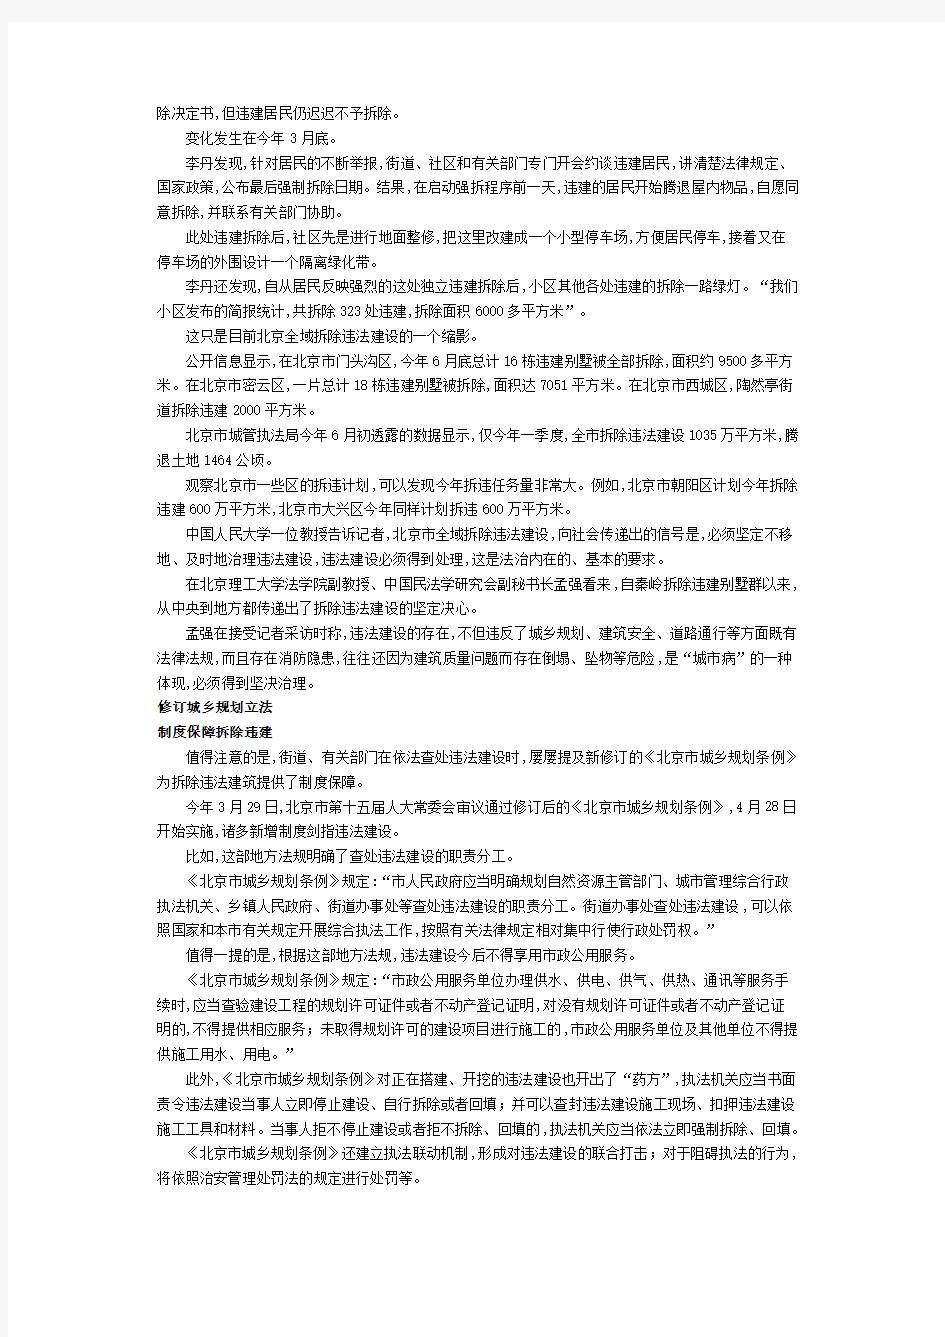 《北京市城乡规划条例》修订实施制度保障北京全域拆除私搭乱建